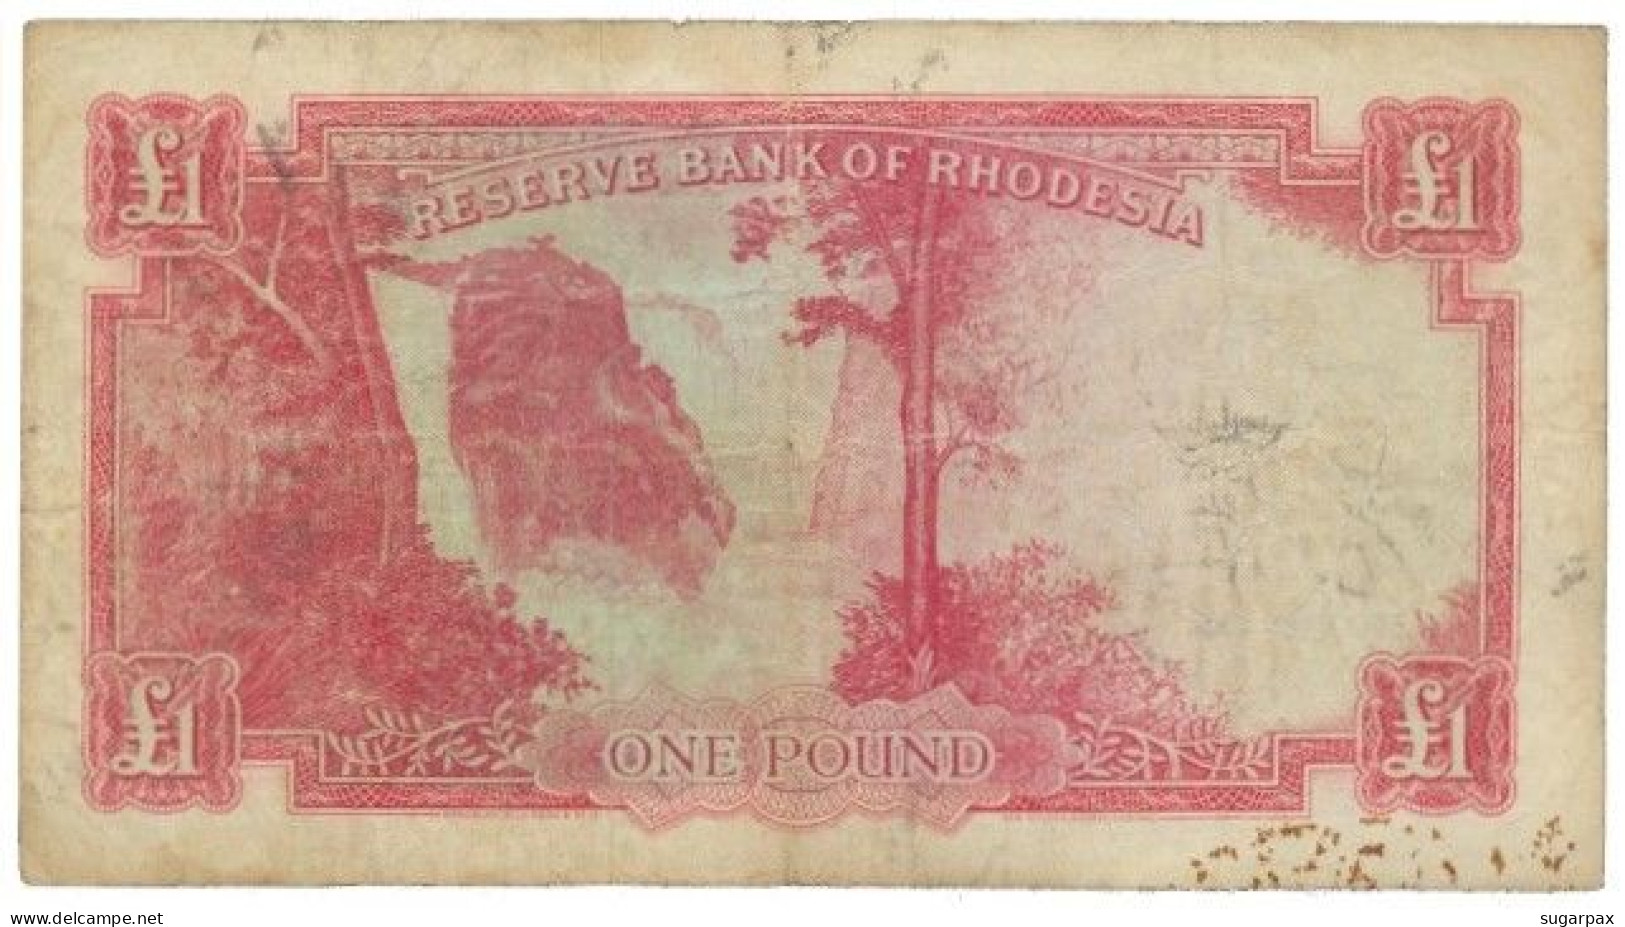 RHODESIA - 1 Pound - 21.09.1964 - Pick 25 - RRRRRRRRRR - Queen Elizabeth II - Rhodesien